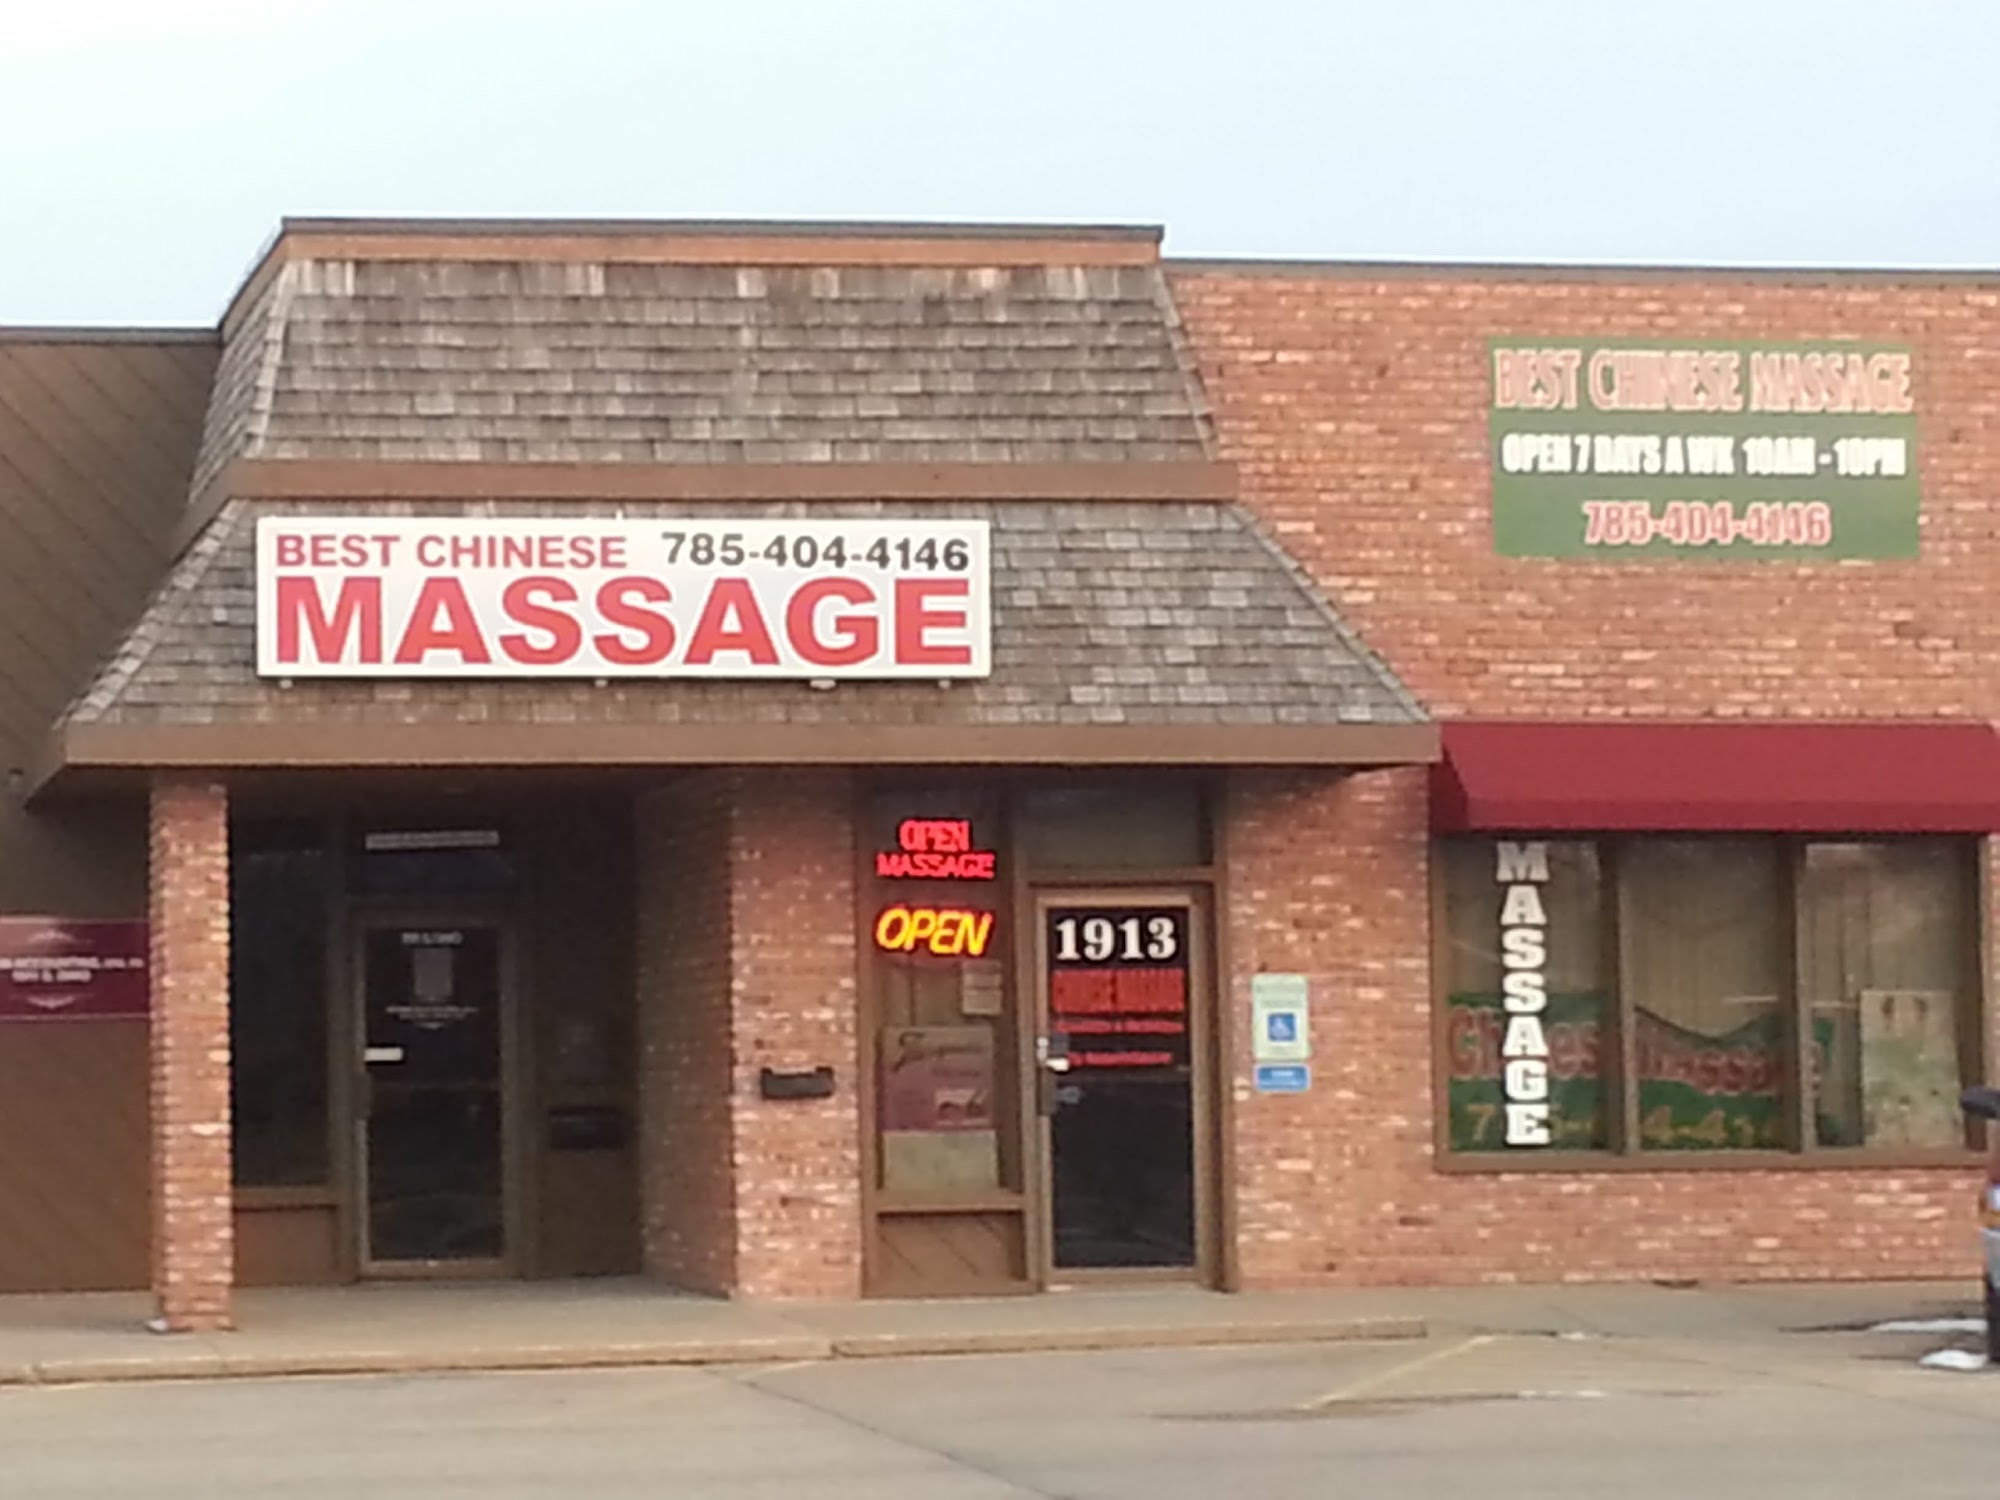 Best Chinese massage ohio